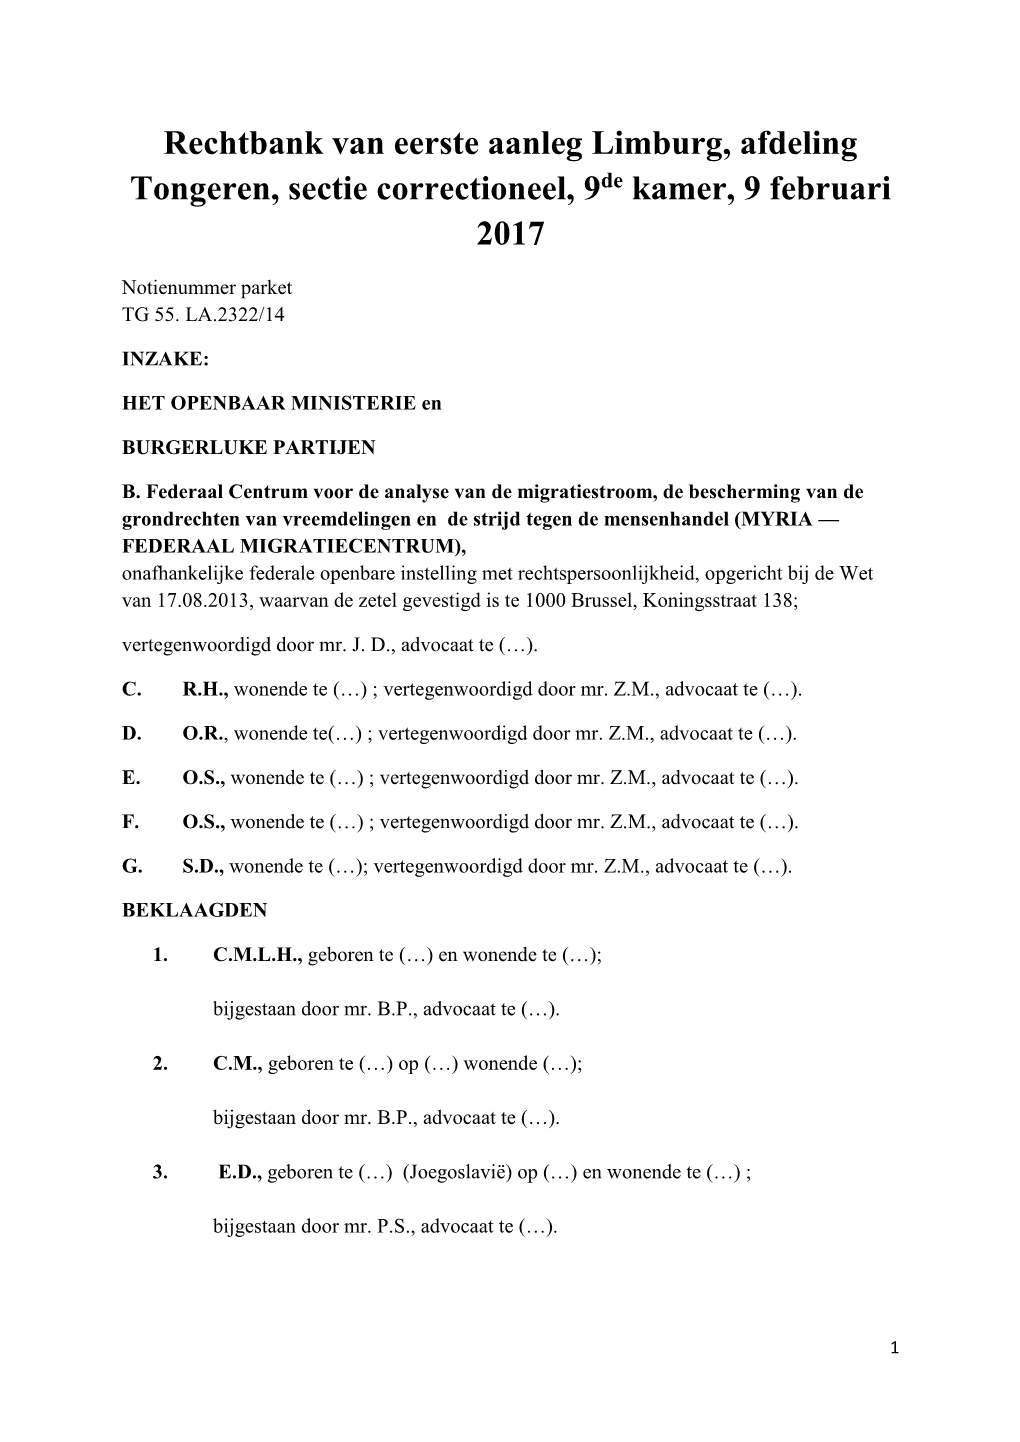 Rechtbank Van Eerste Aanleg Limburg, Afdeling Tongeren, Sectie Correctioneel, 9De Kamer, 9 Februari 2017